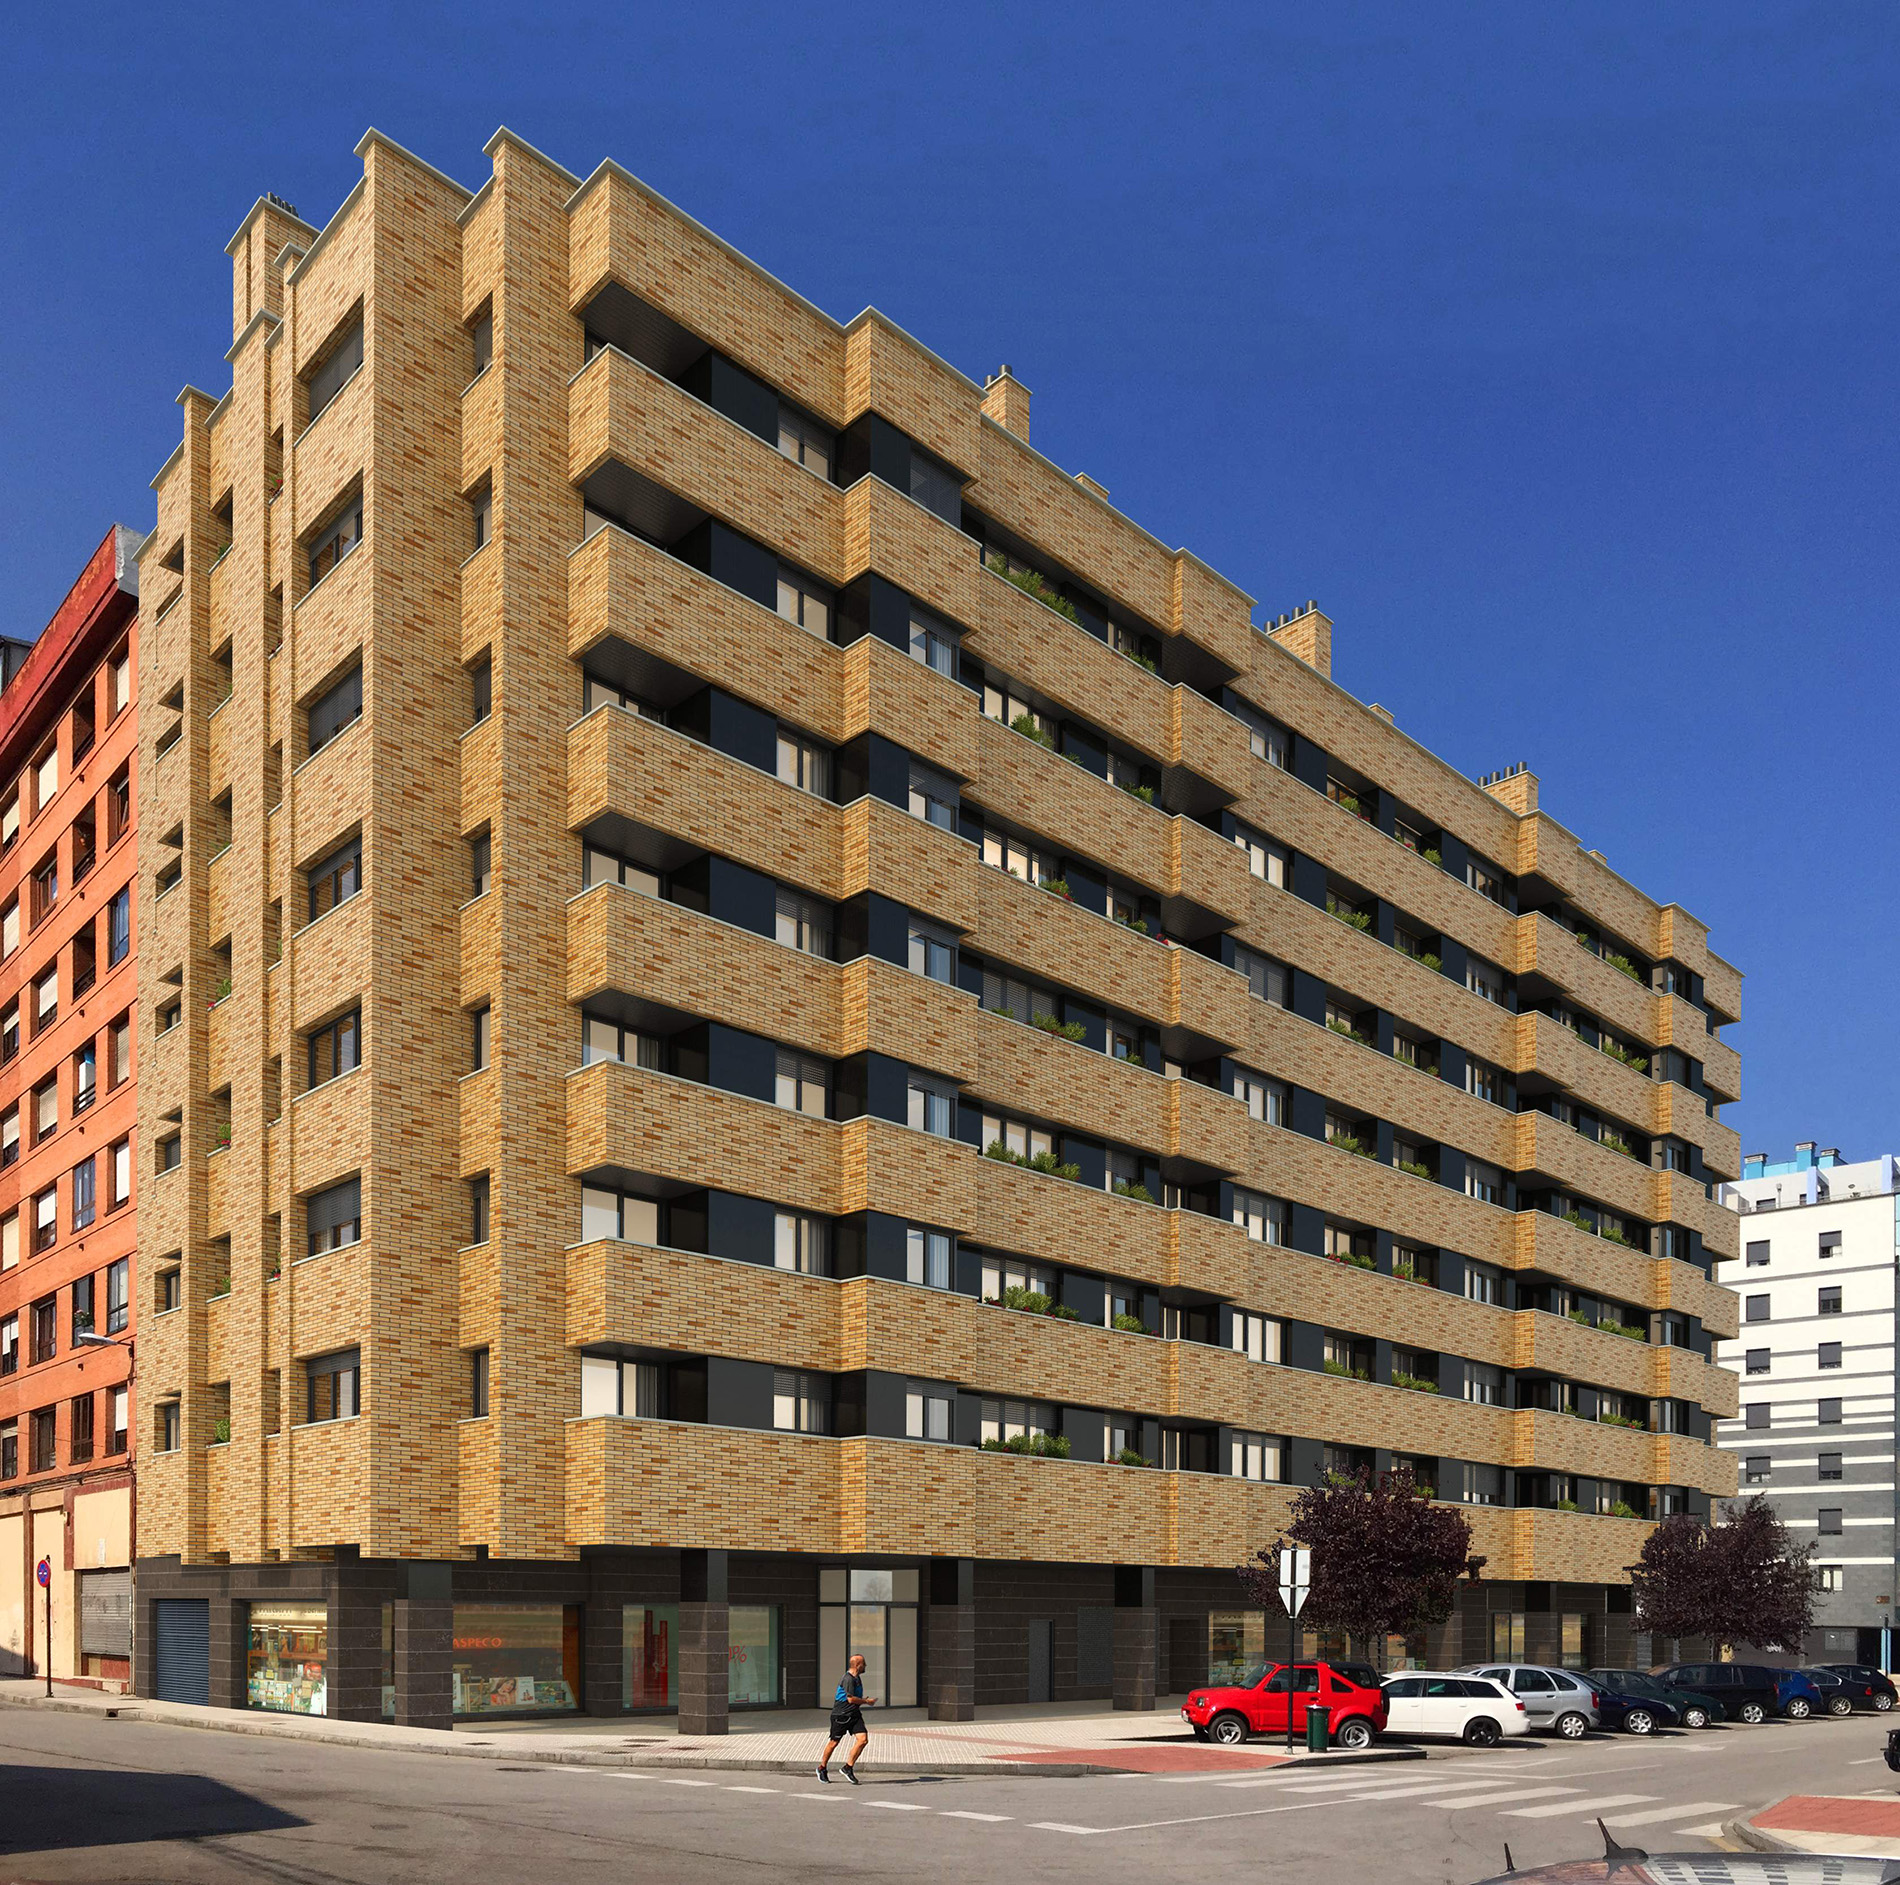 Edificio de viviendas en La Tenderina – Oviedo